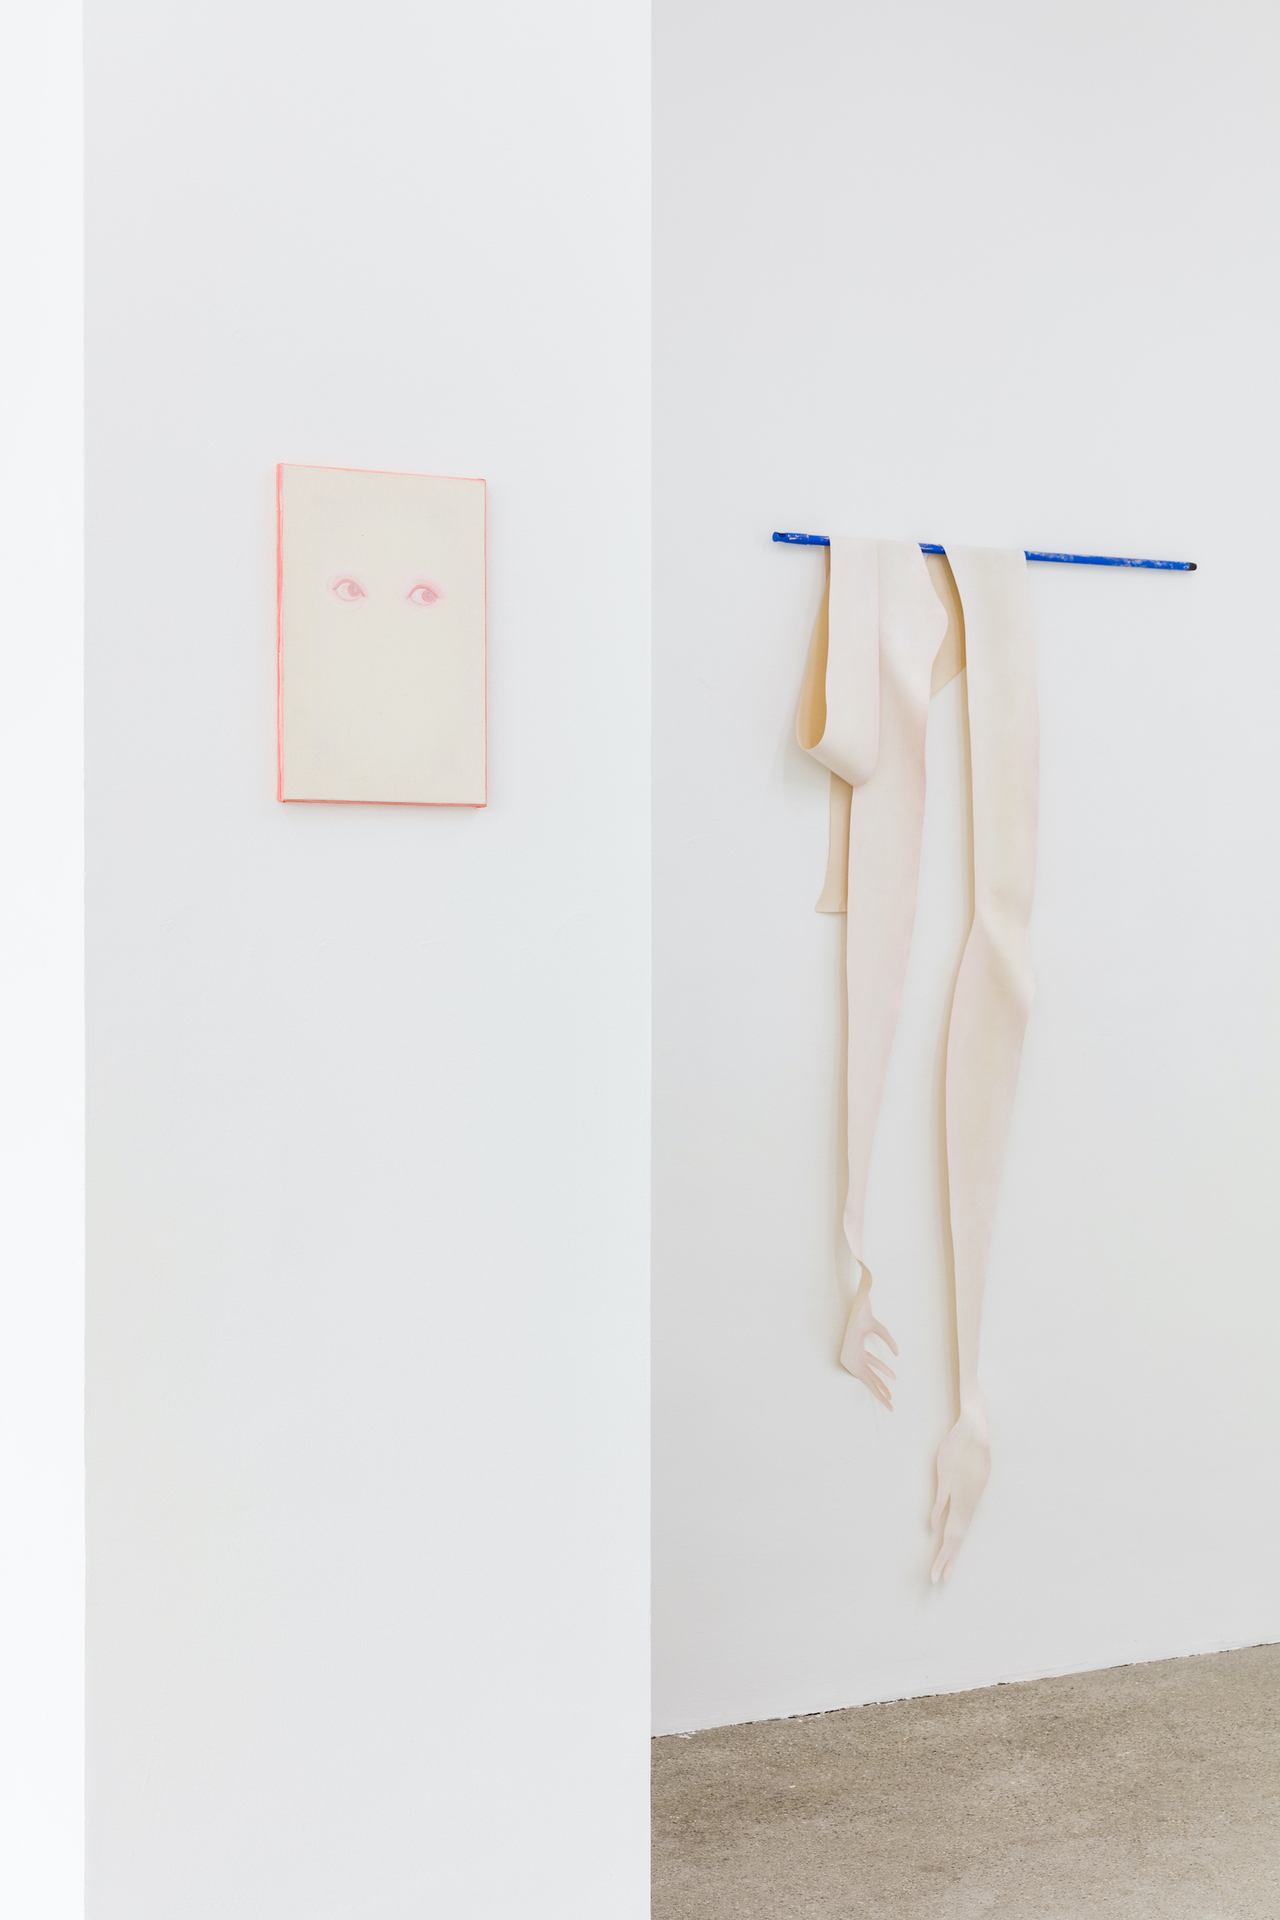 Sarah Bechter, Untitled (Hi!), 2020, oil on canvas, 45 x 30 cm Sarah Bechter, Untitled, 2020, oil on canvas, dimensions variable